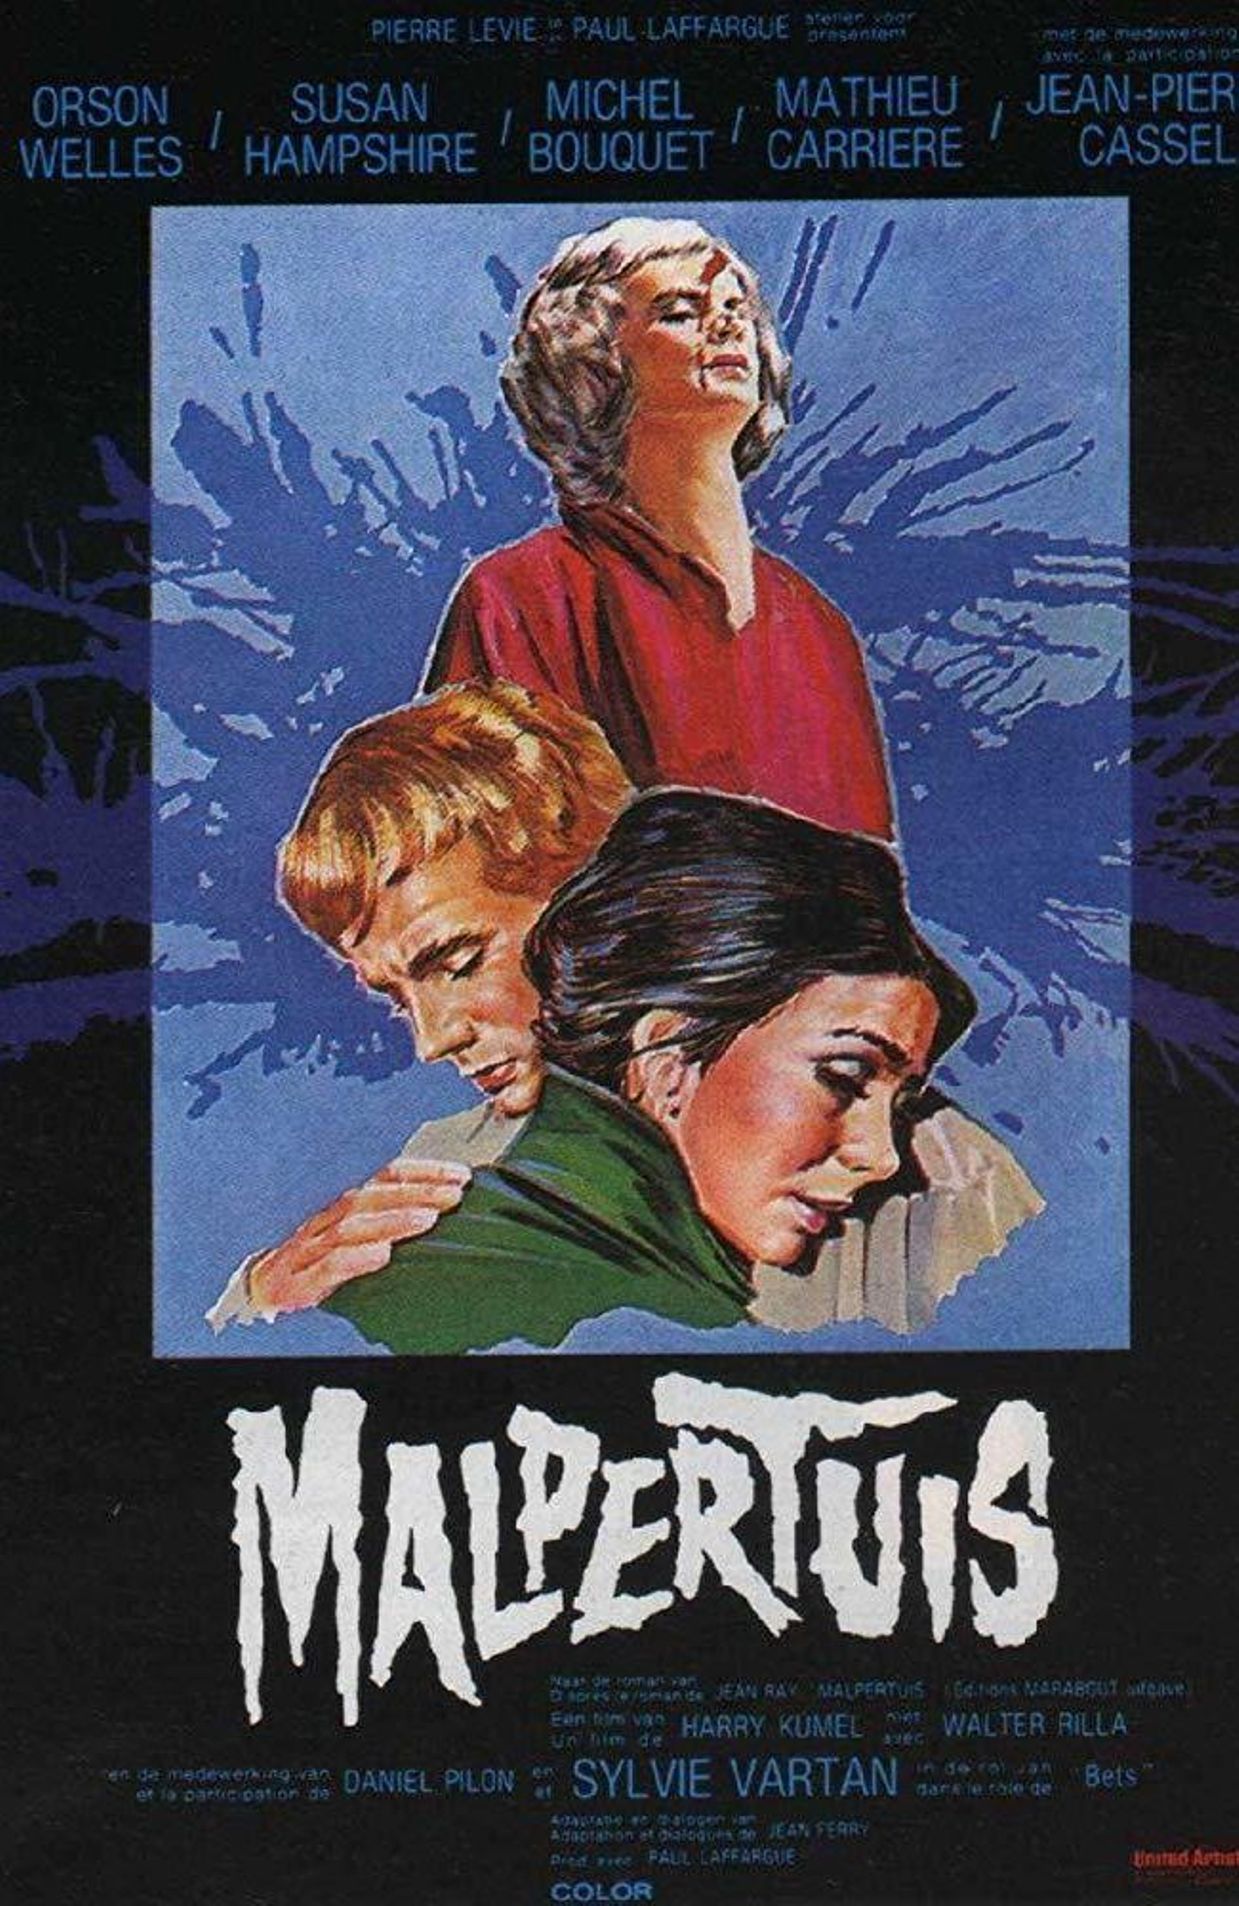 Affiche du film "Malpertuis" de Harry Kümel, en 1971